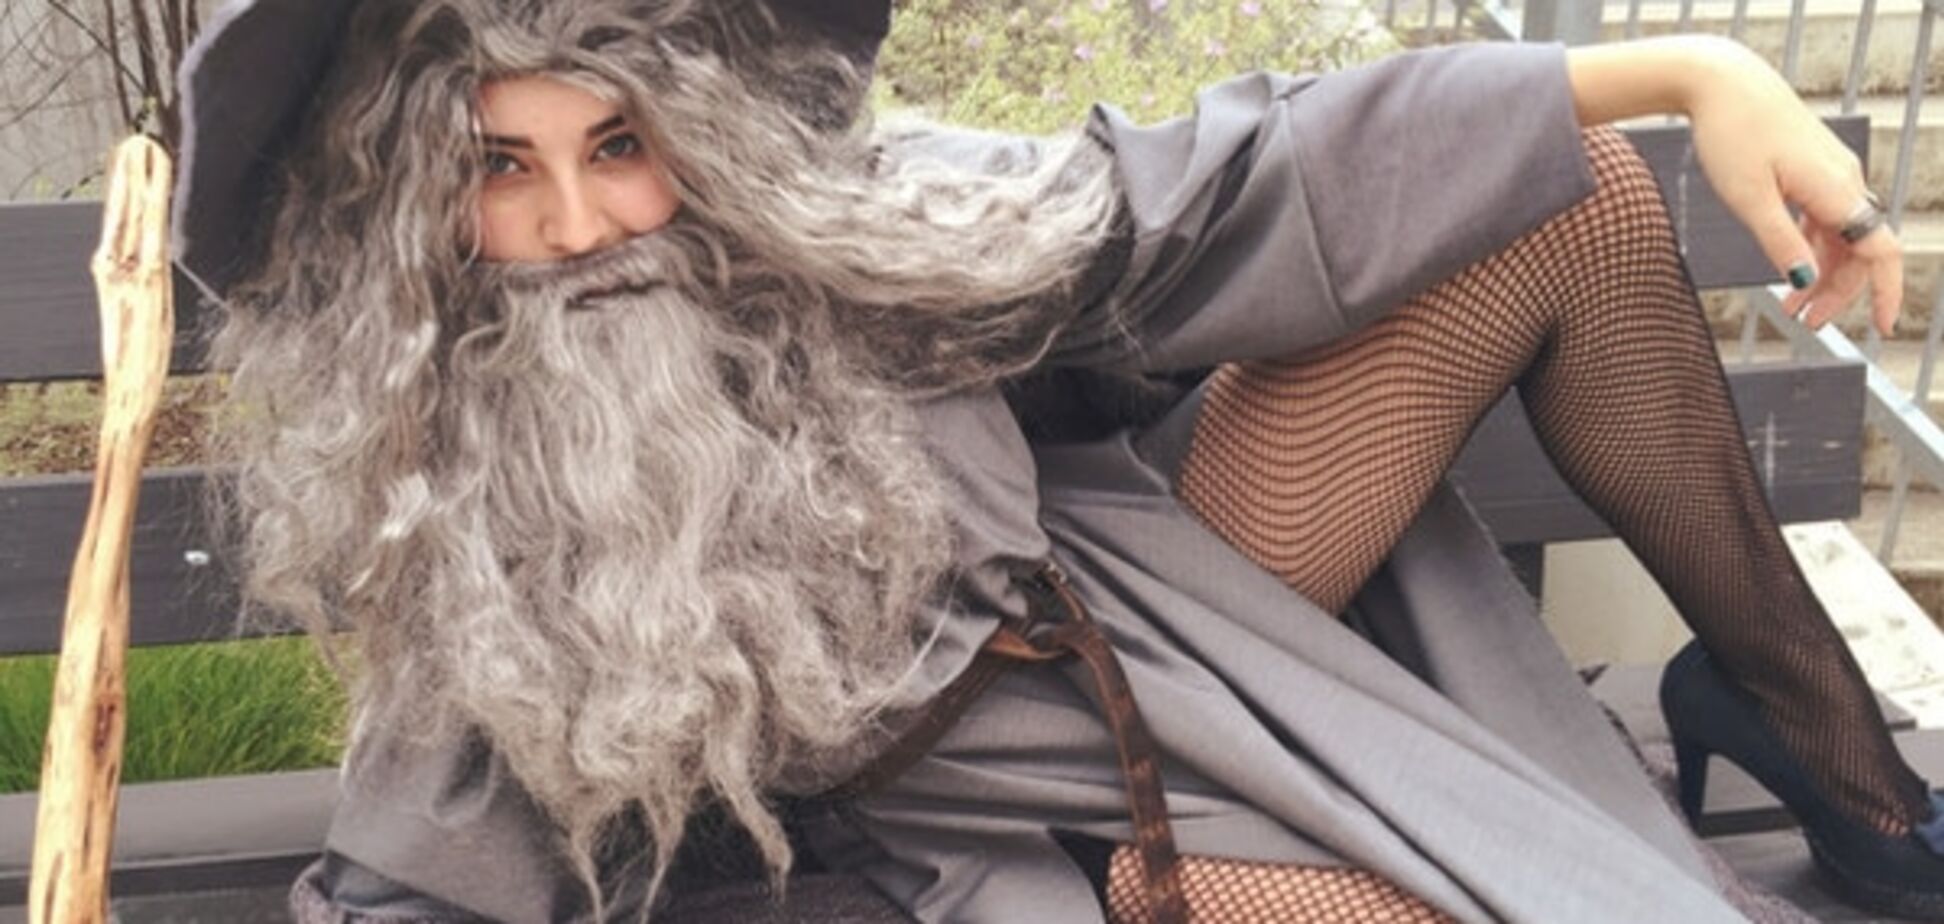 Сексуальная девушка с бородой и в колготках покорила интернет: фотофакт